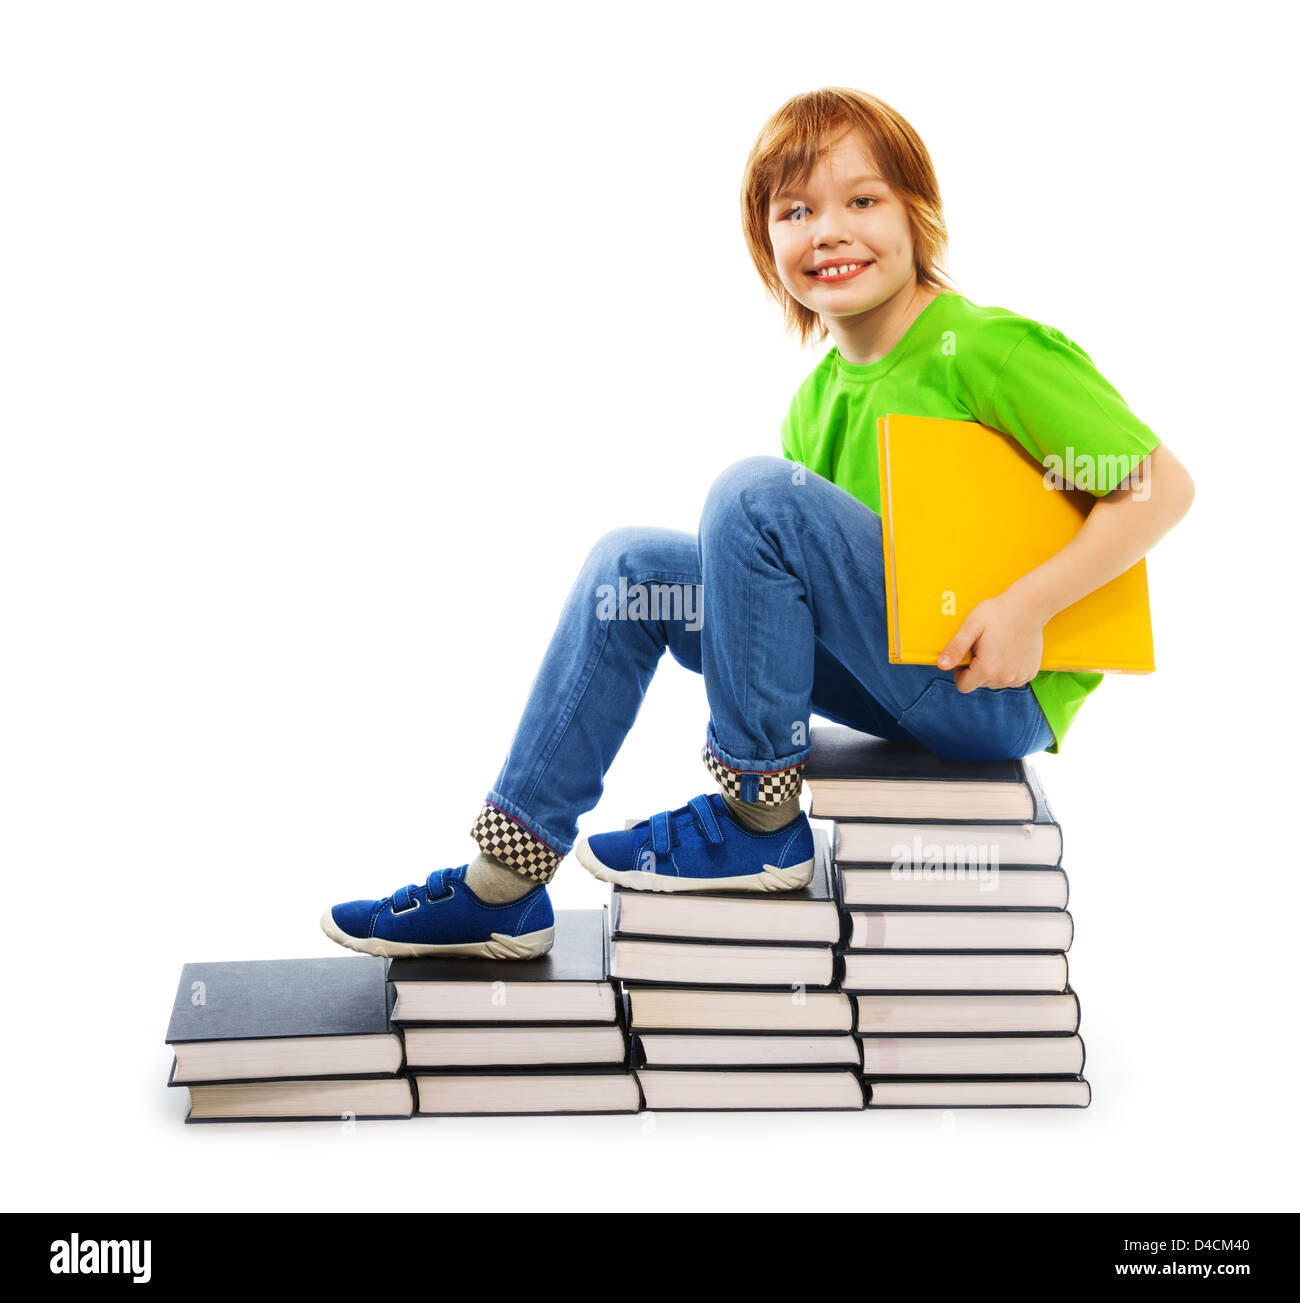 Happy woman 9 ans garçon en chemise verte debout sur les escaliers faits de pile de livres holding yellow livre relié, isolated on white Banque D'Images